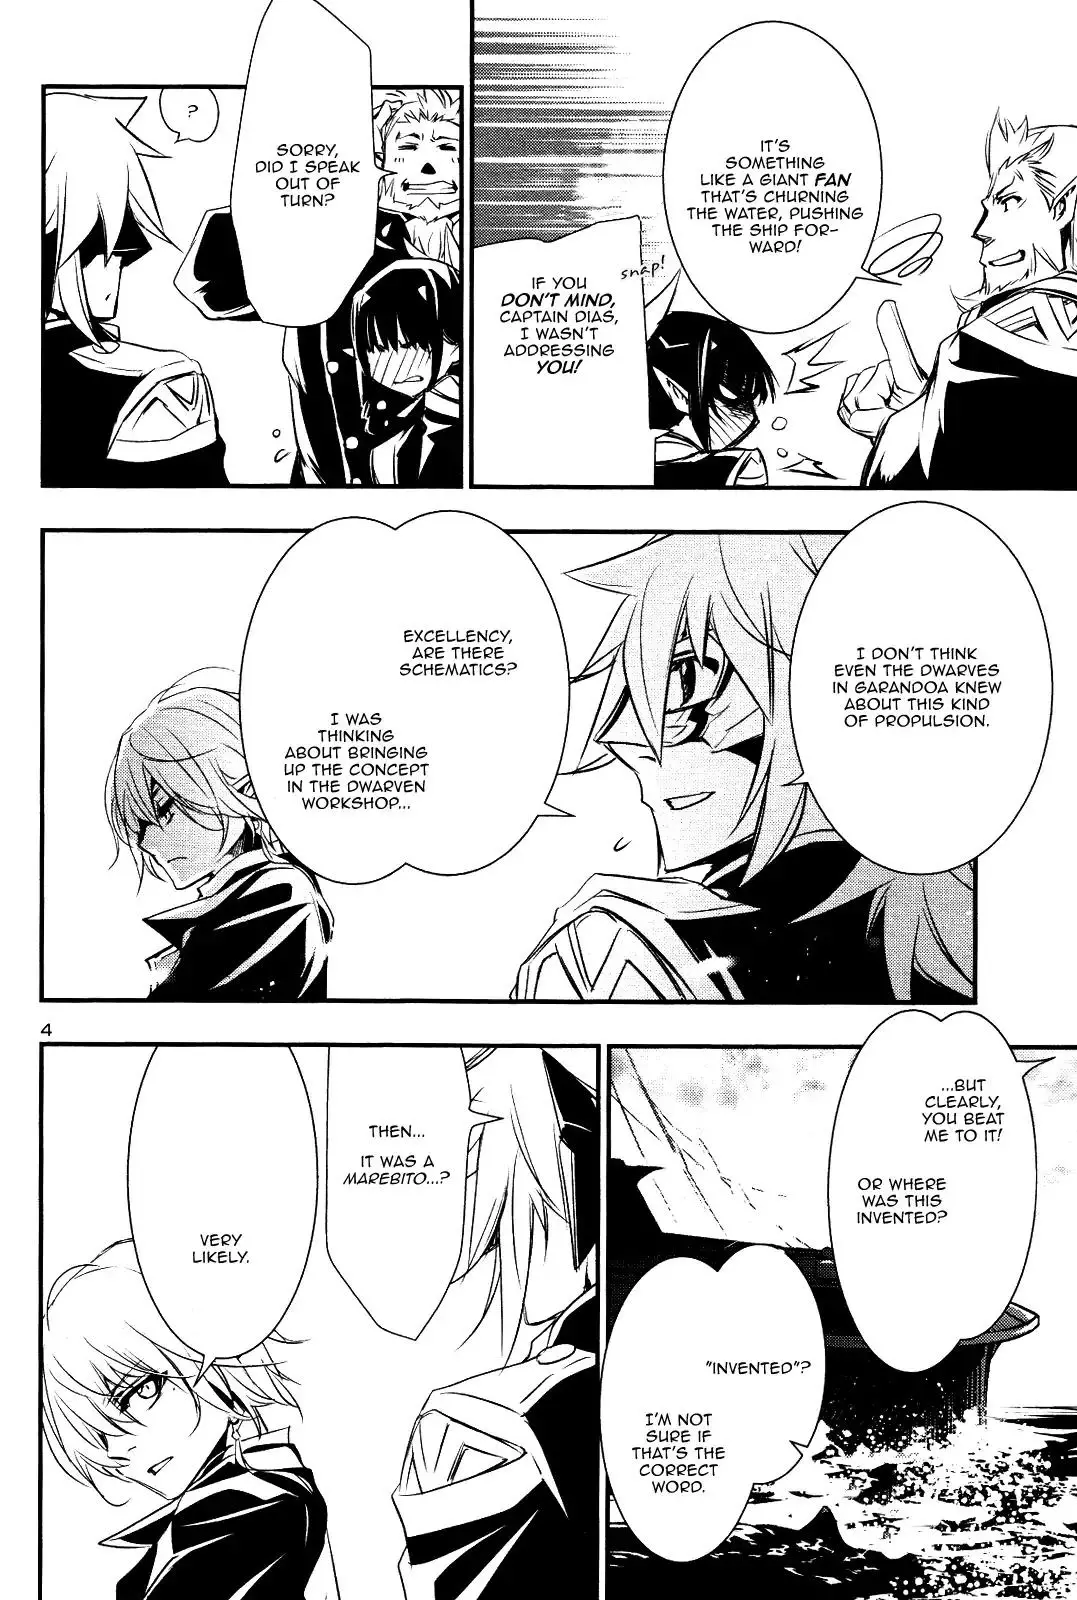 Shinju no Nectar - 22 page 2